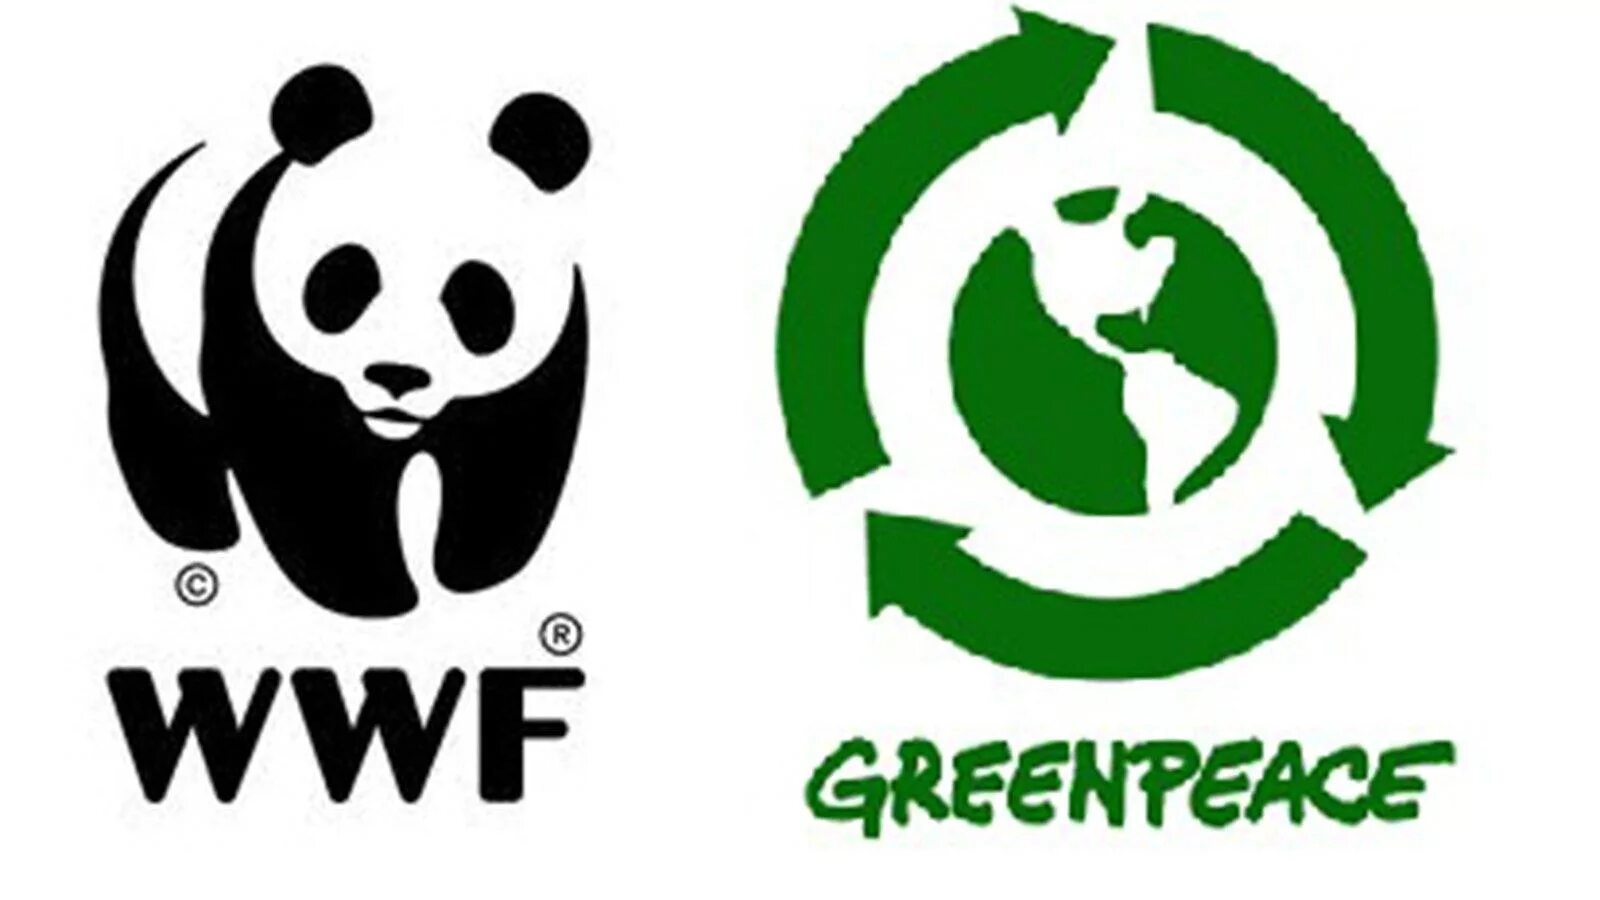 Международная организация Гринпис эмблема. Гринпис знак символ. Эмблемы экологических организаций. Greenpeace organization